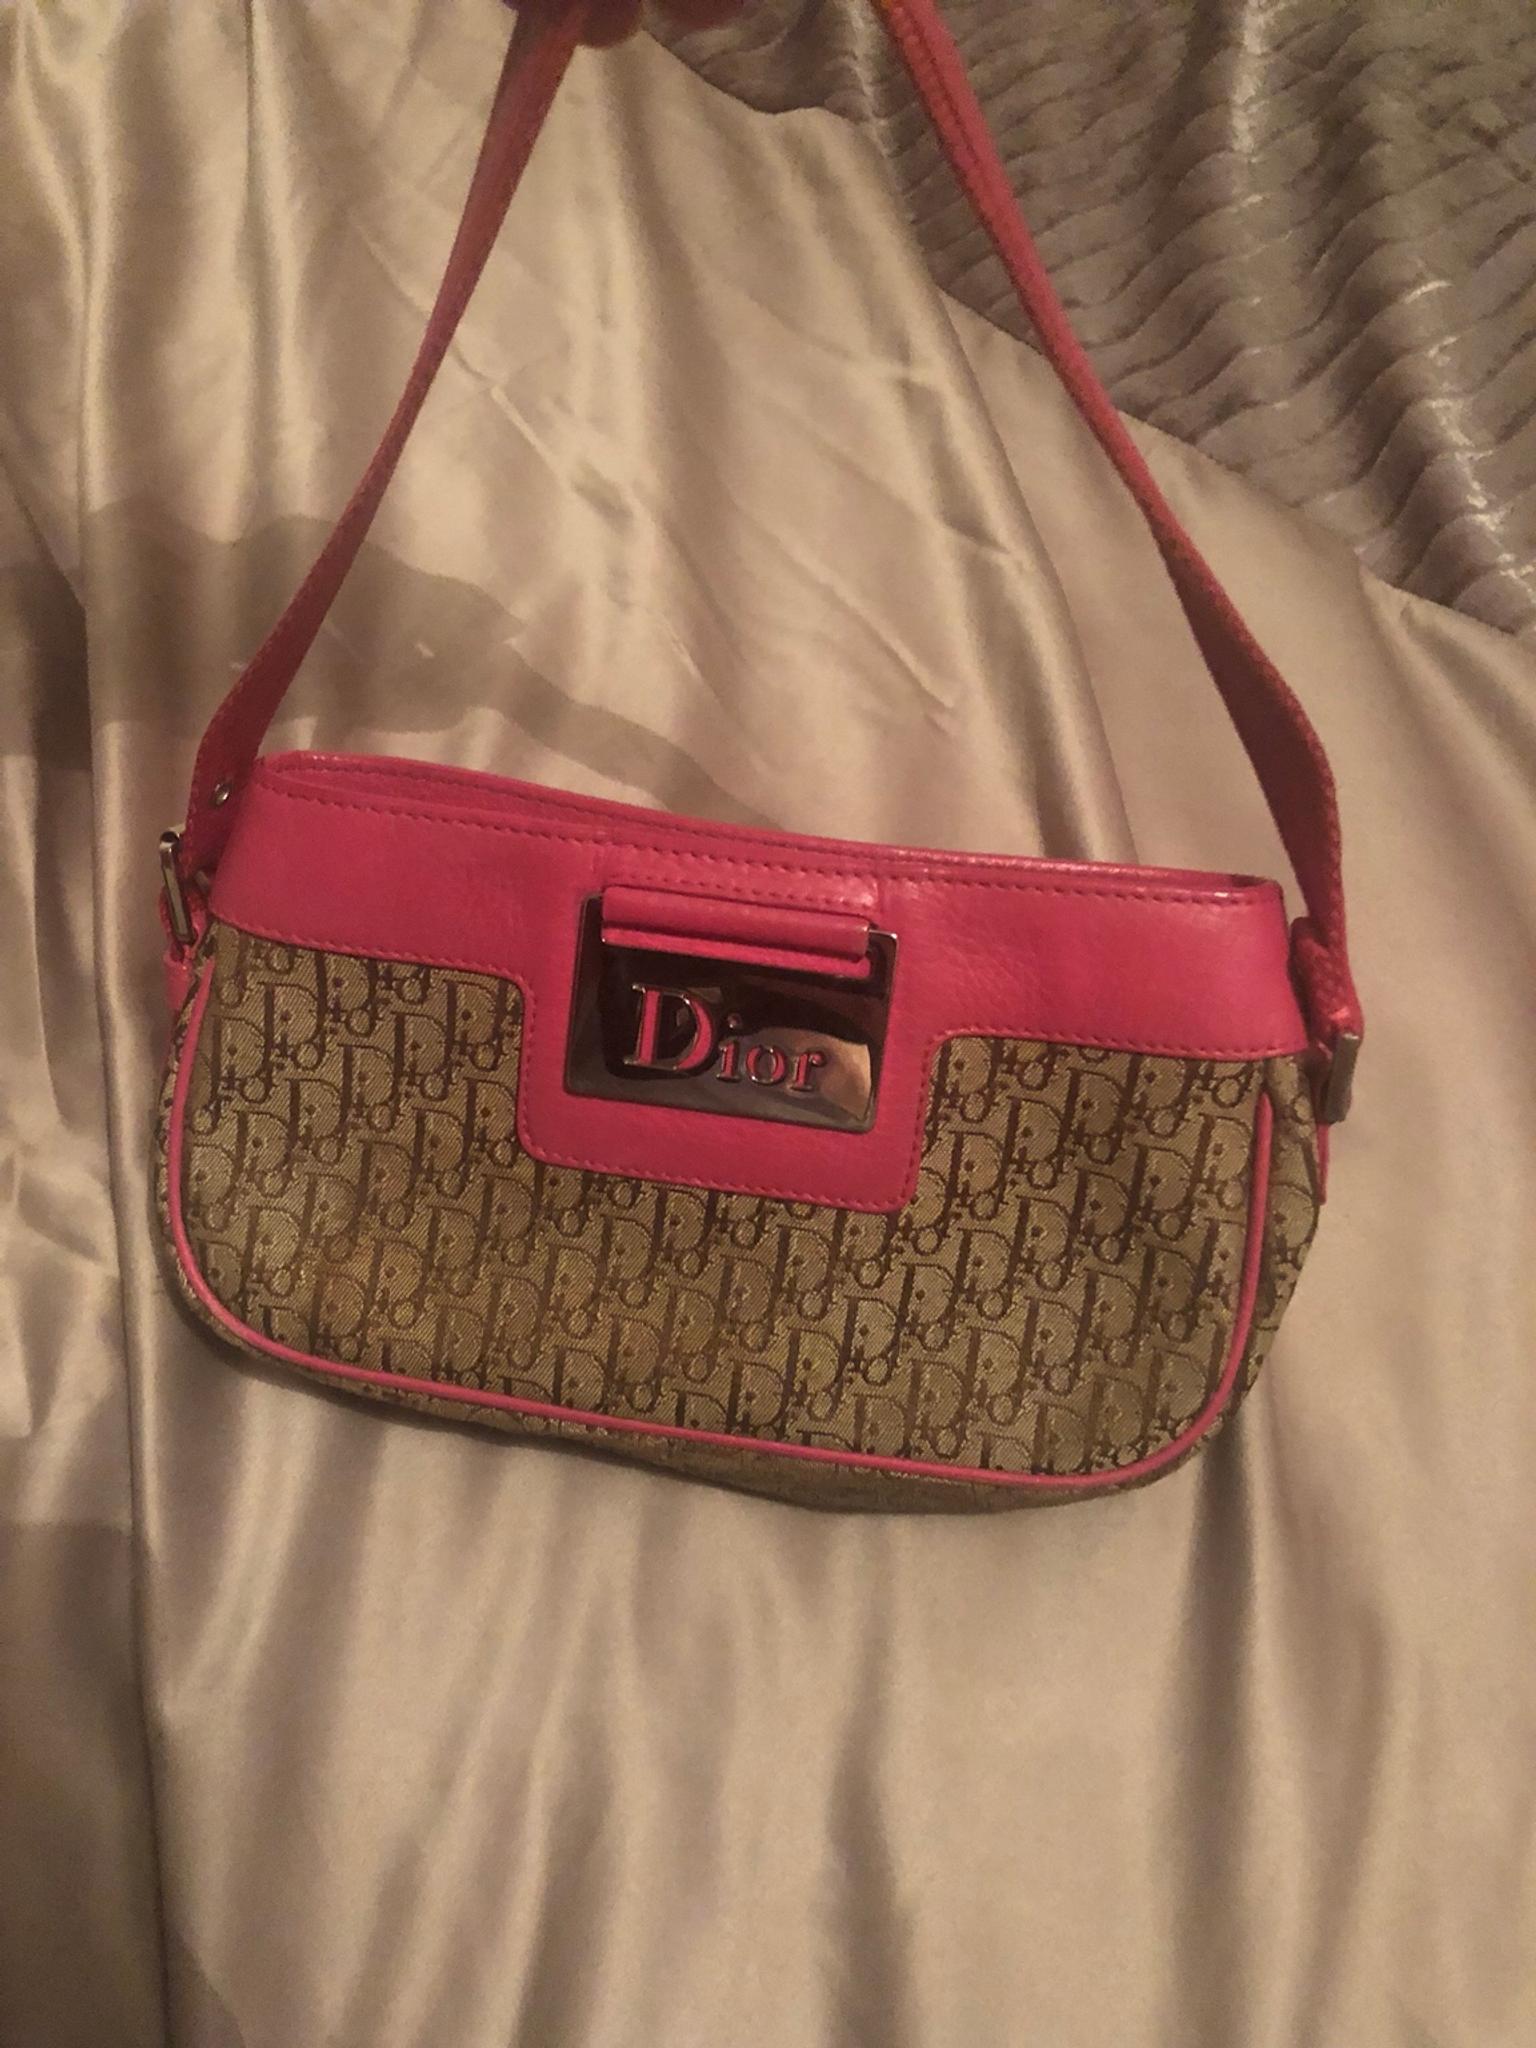 dior handbag vintage